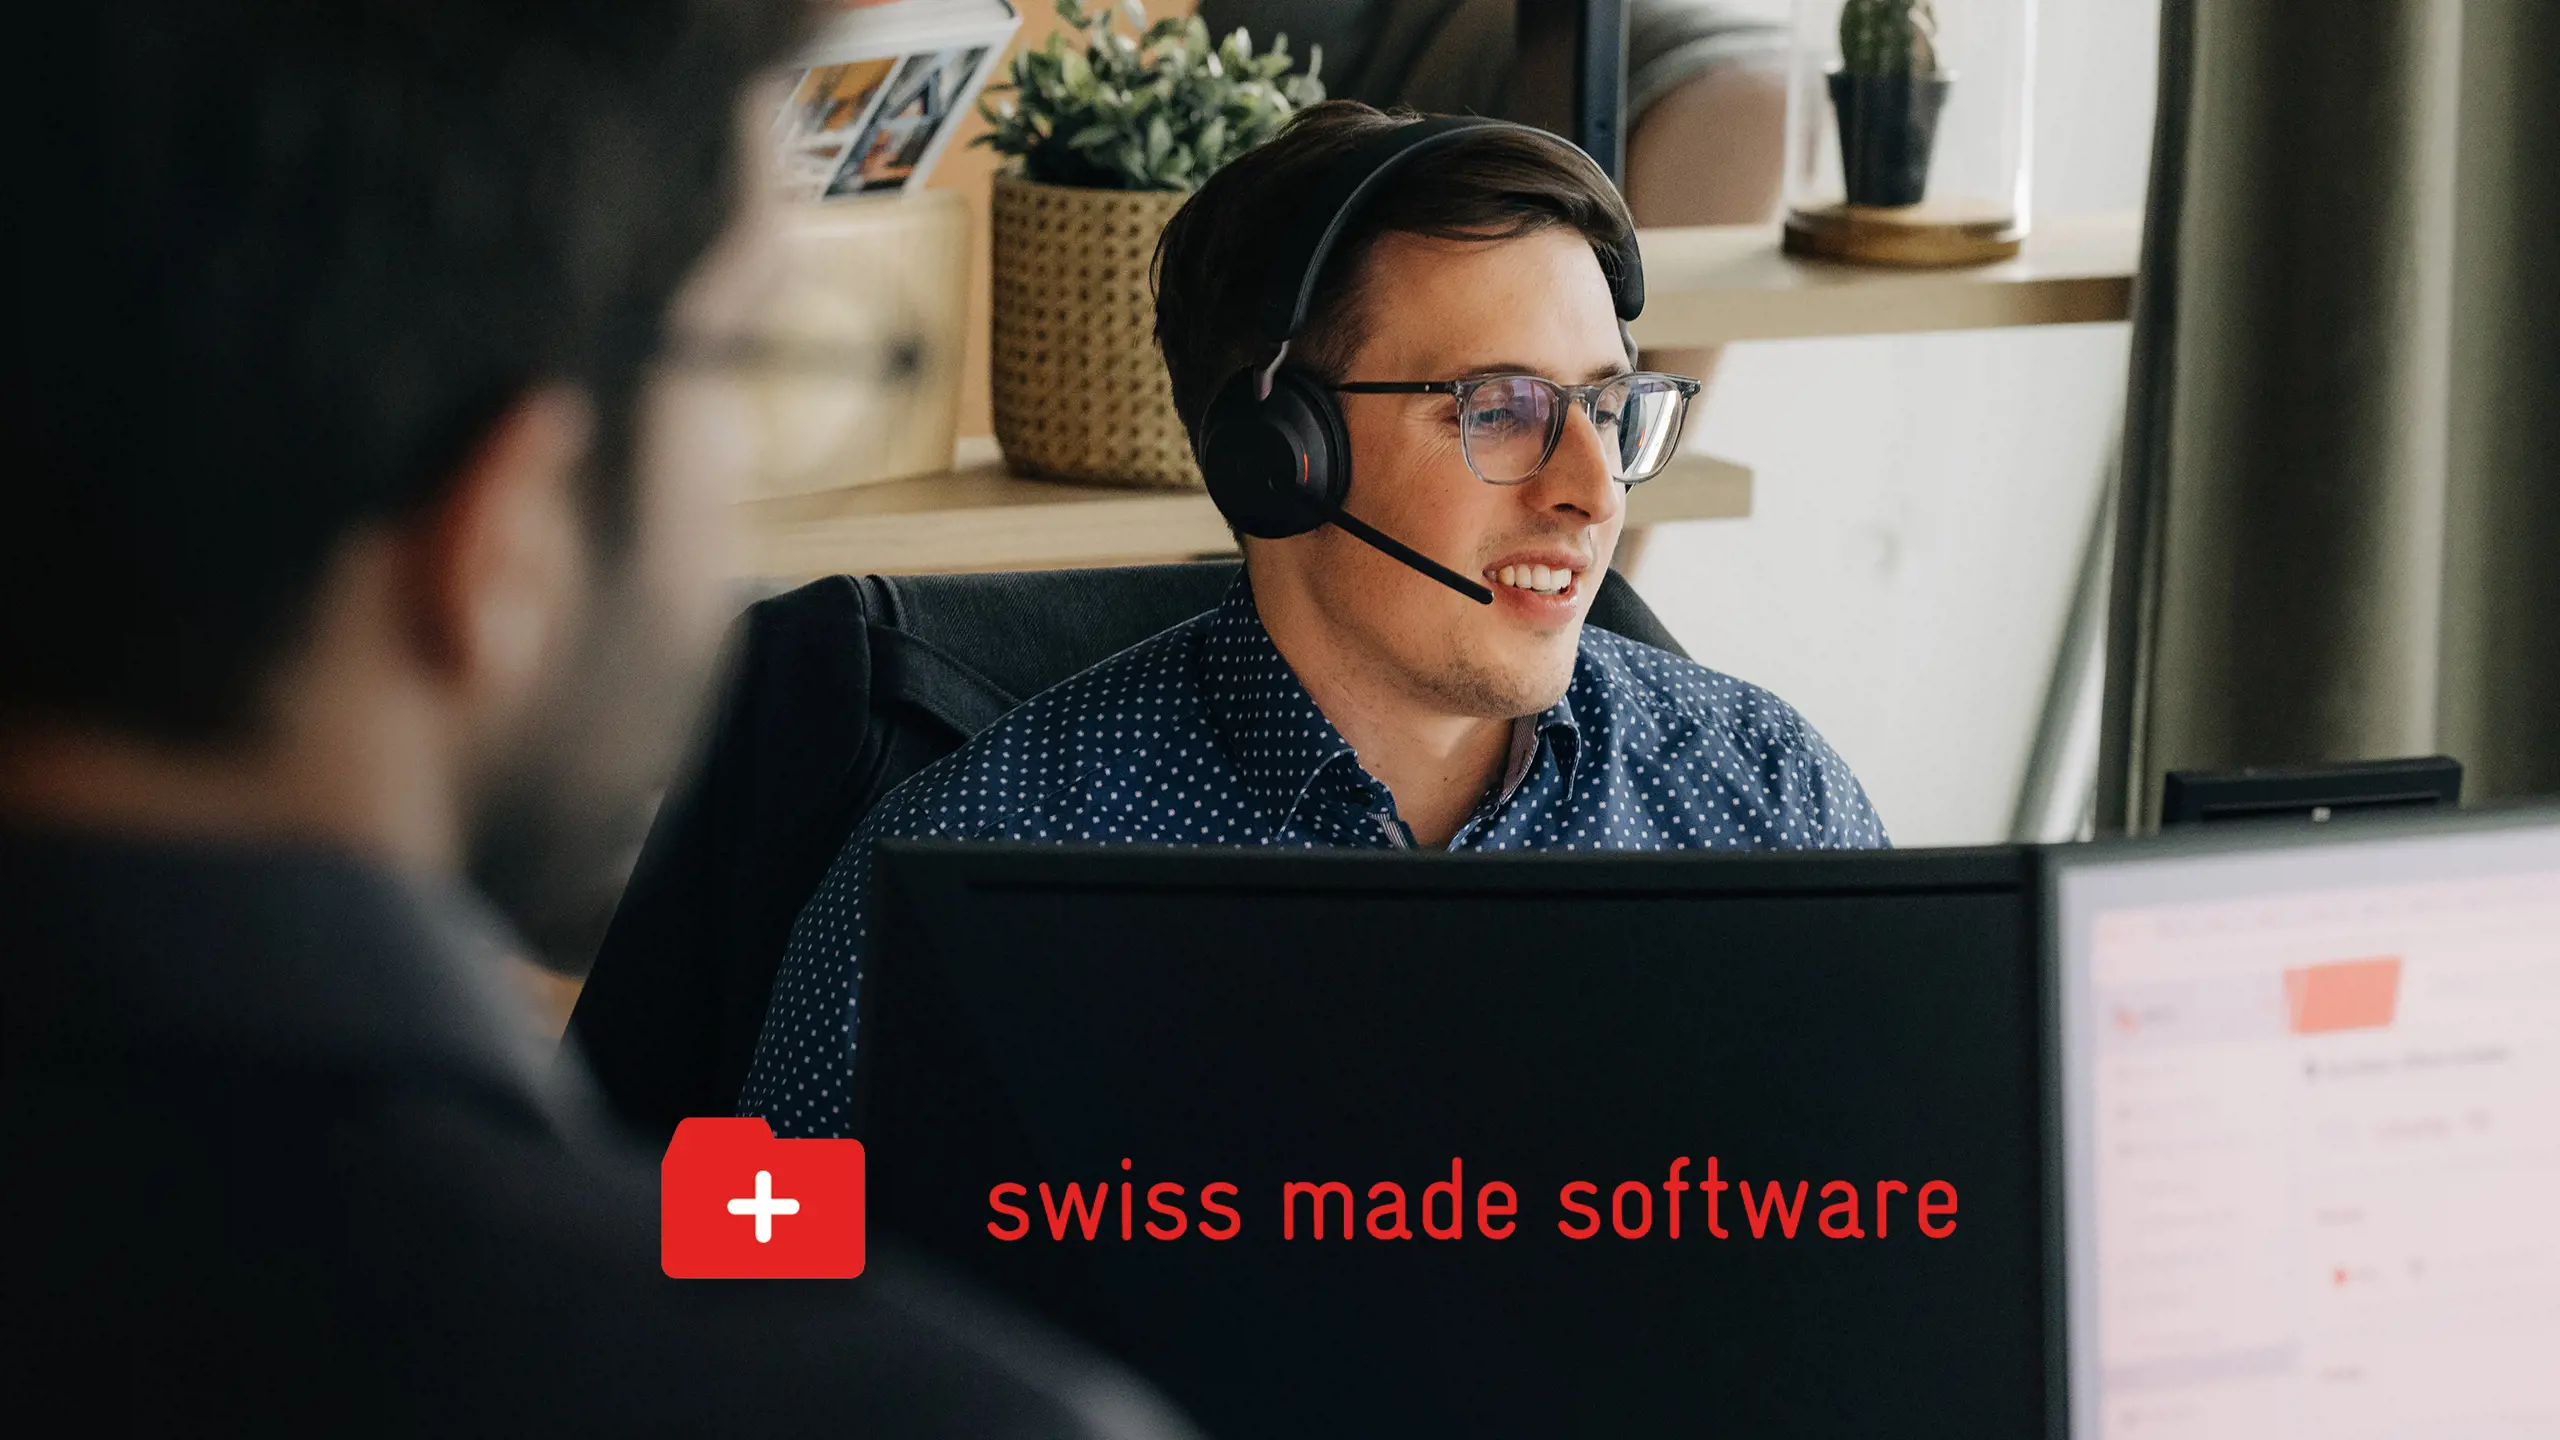 Arbeitender Mann am Computer und unterhalb Swiss made software Logo